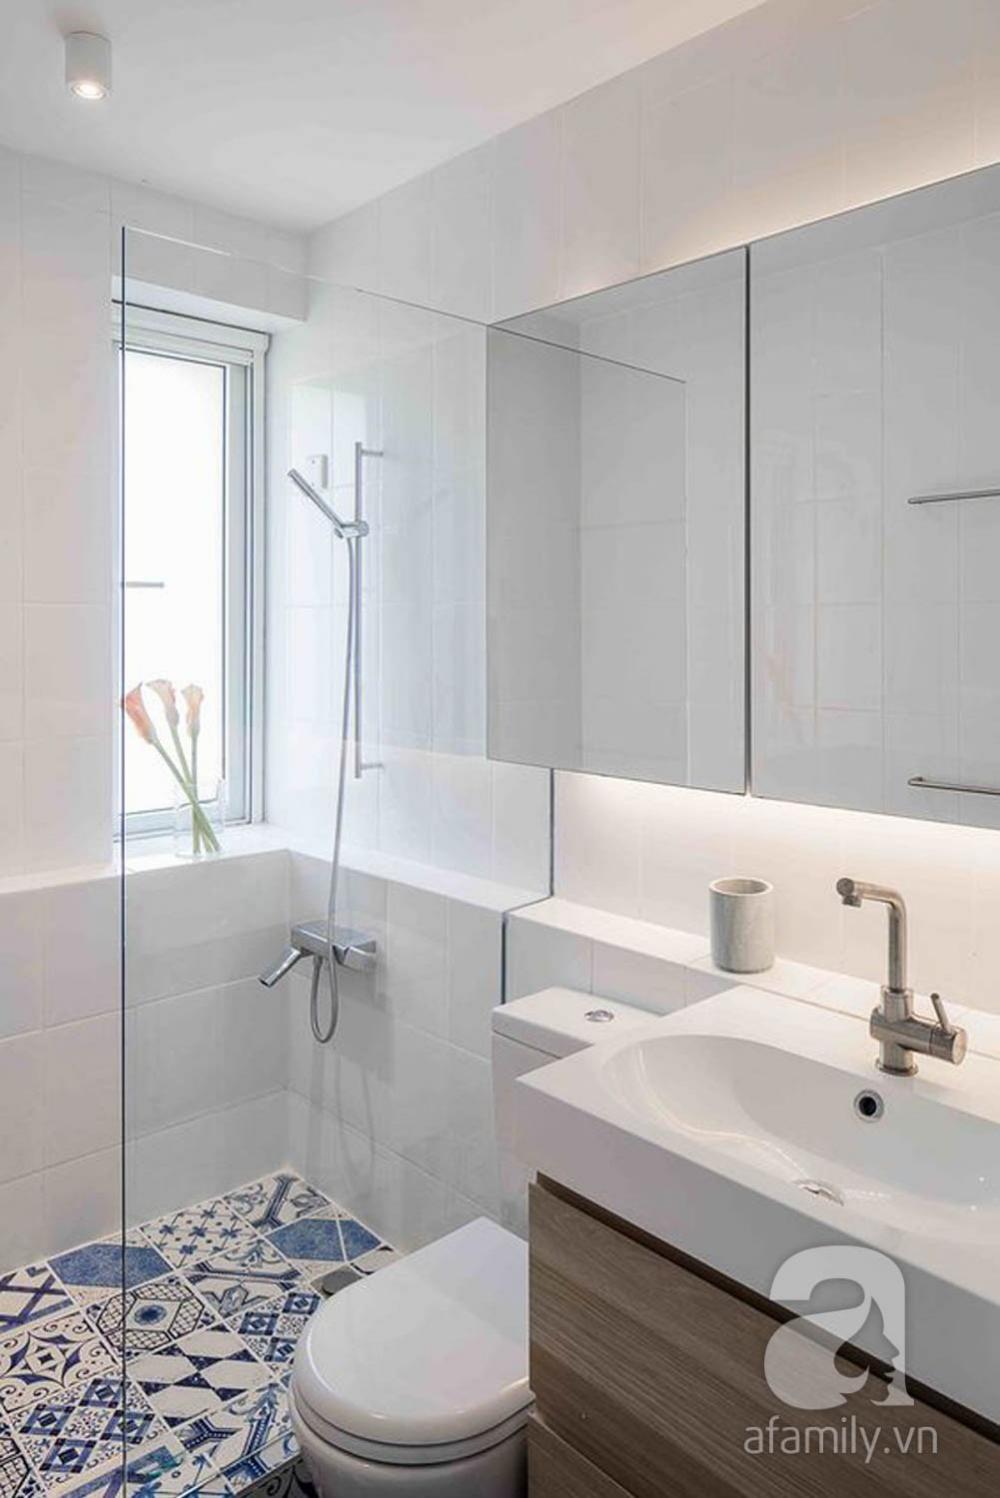 Nhà vệ sinh sử dụng buồng tắm kính đứng để tiết kiệm không gian